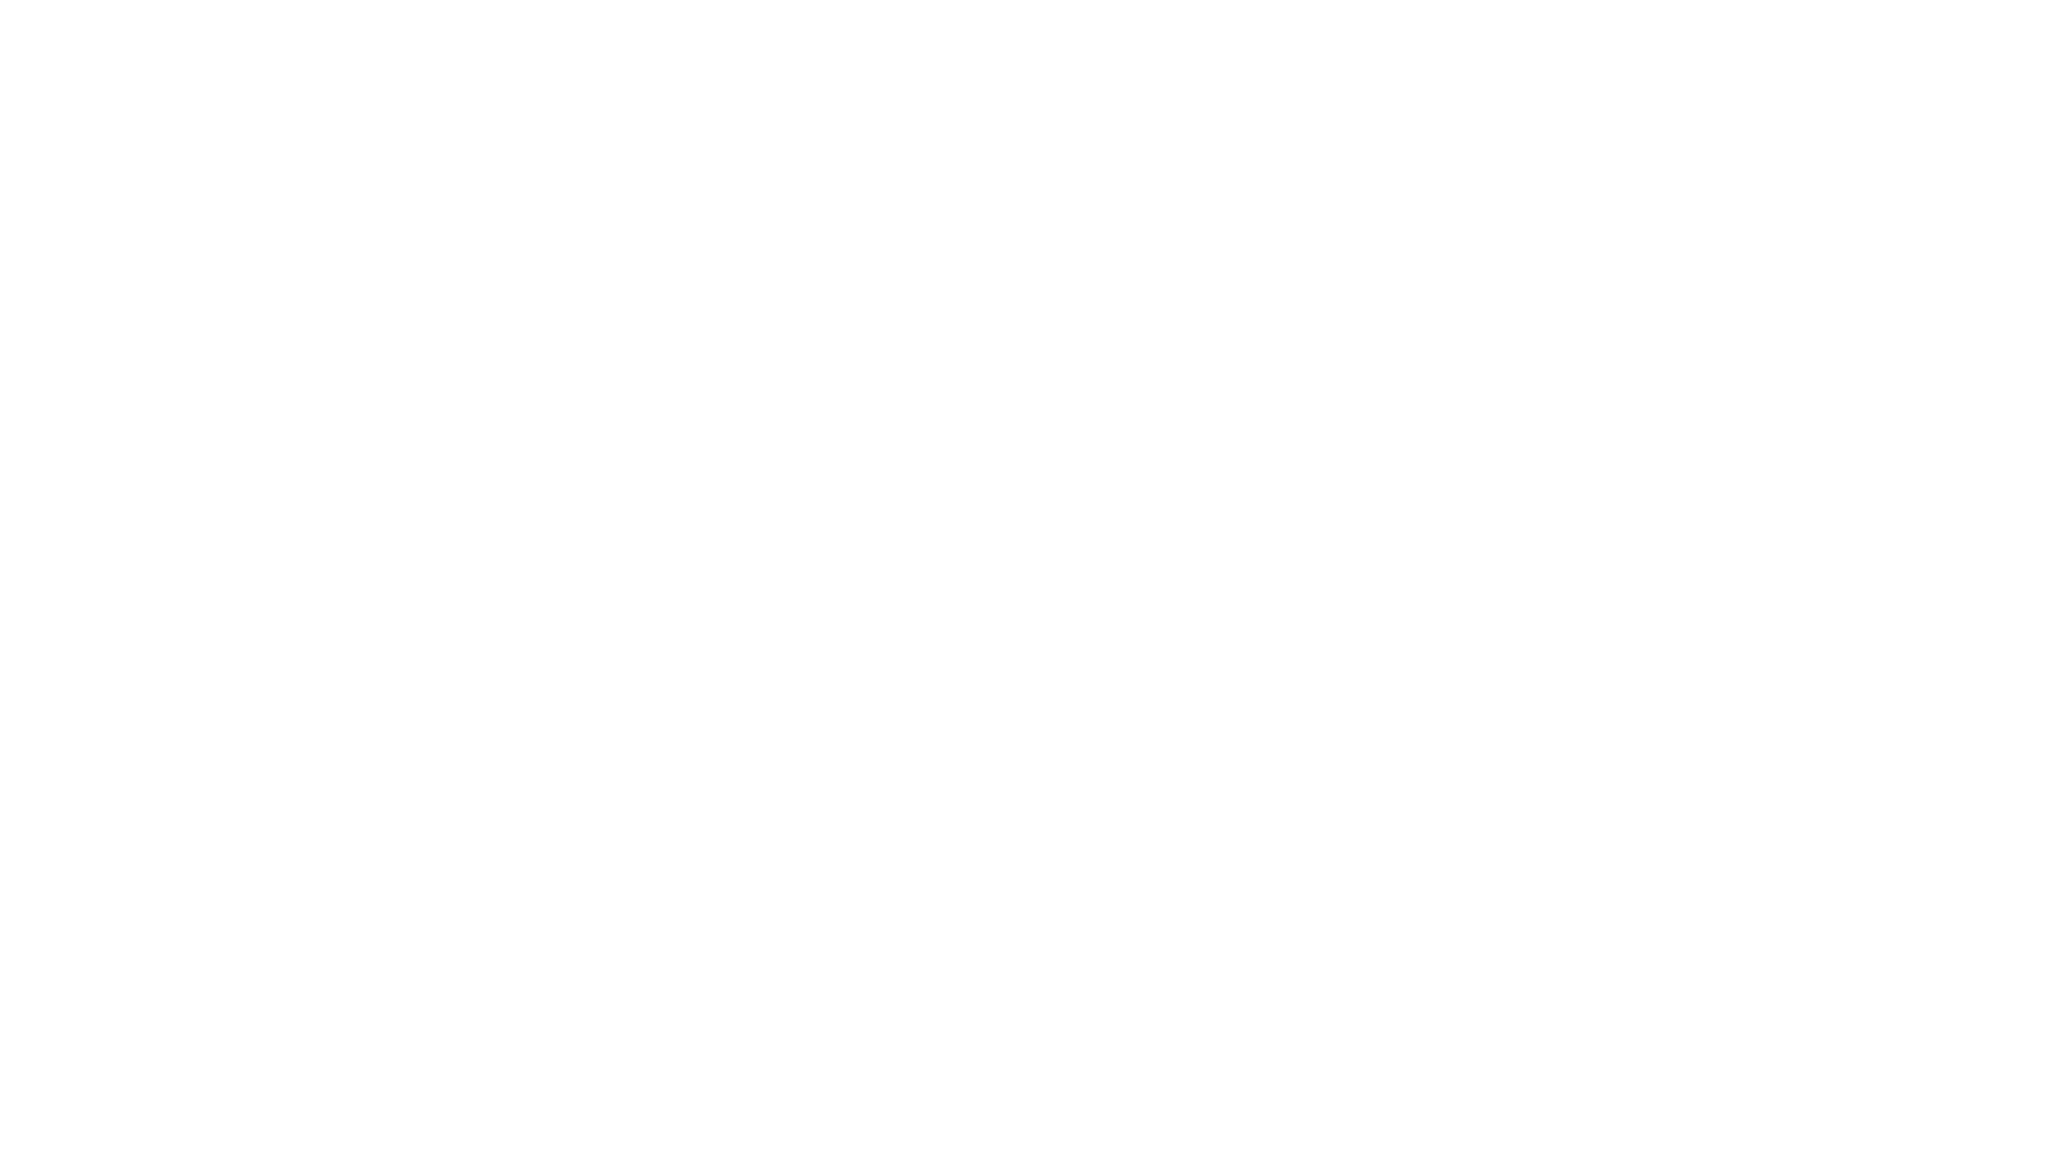 BOWA Legal logo white